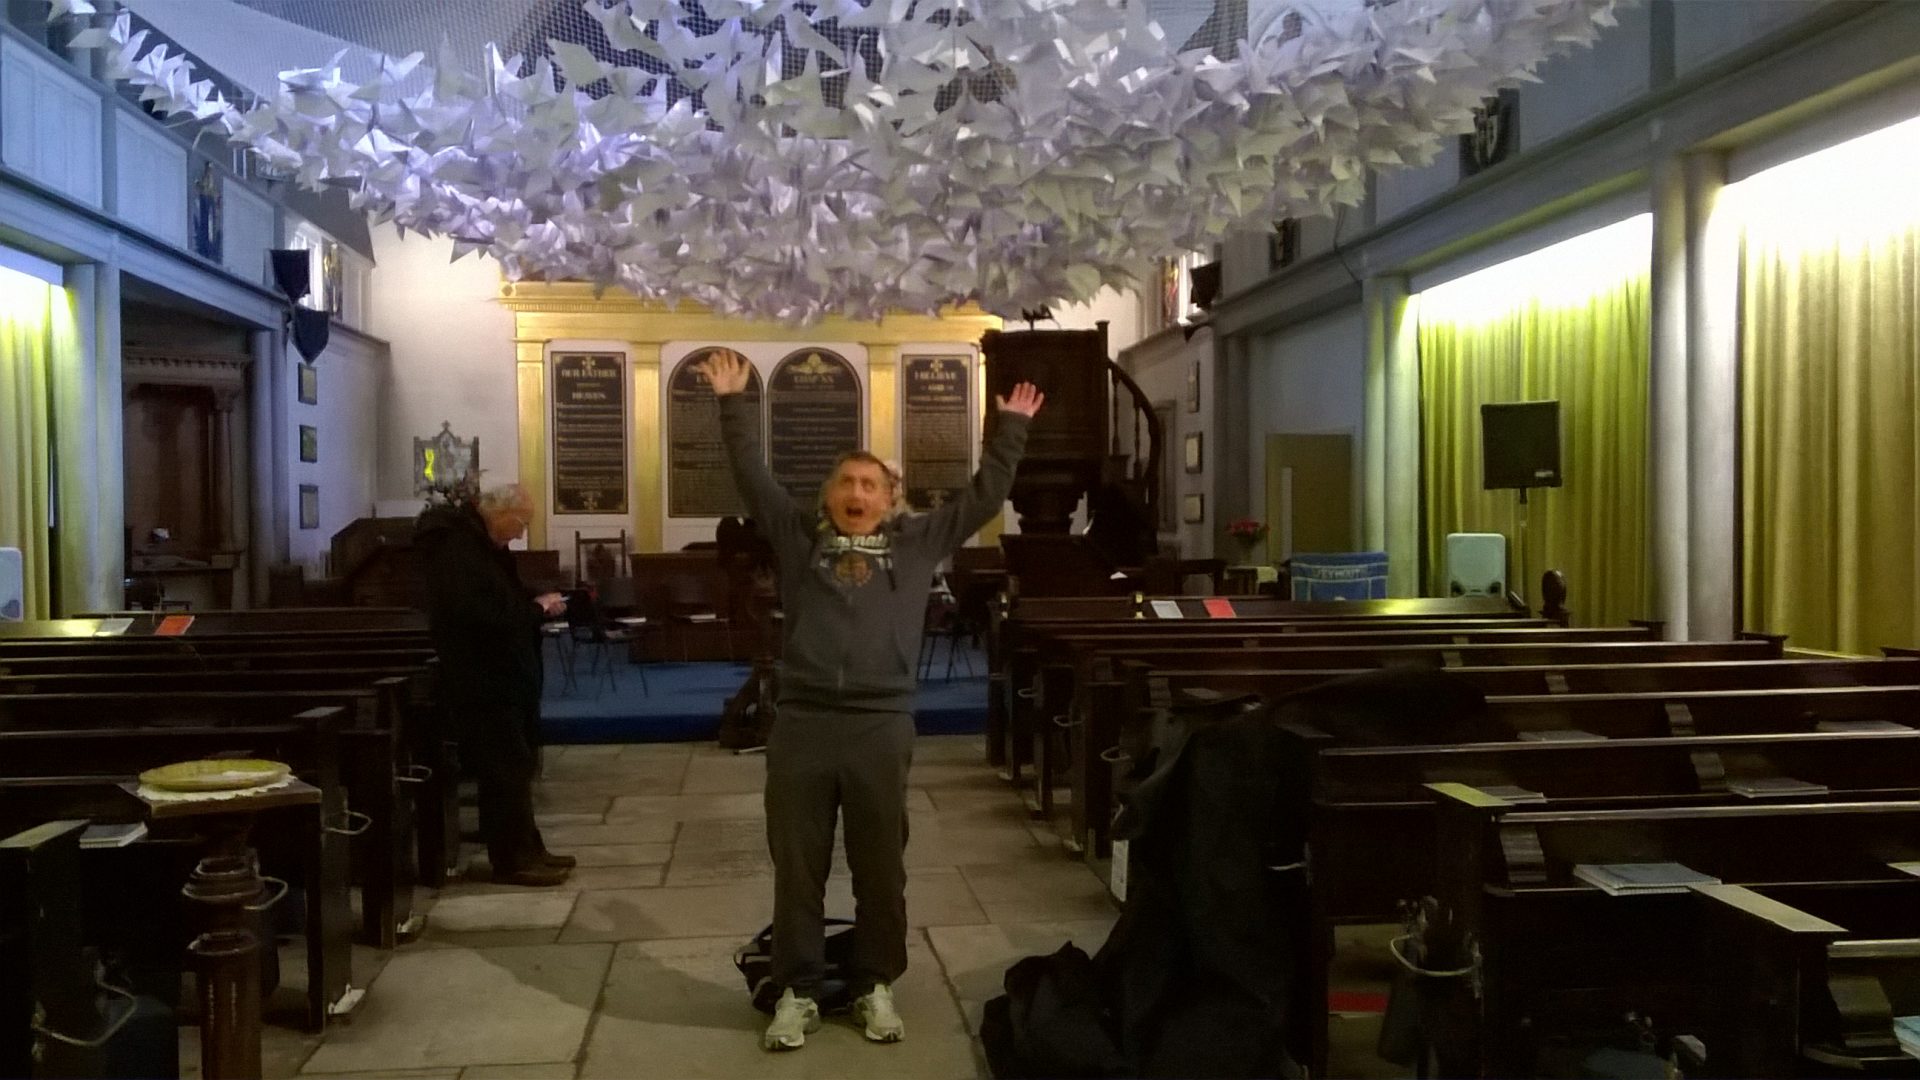 paper doves in church